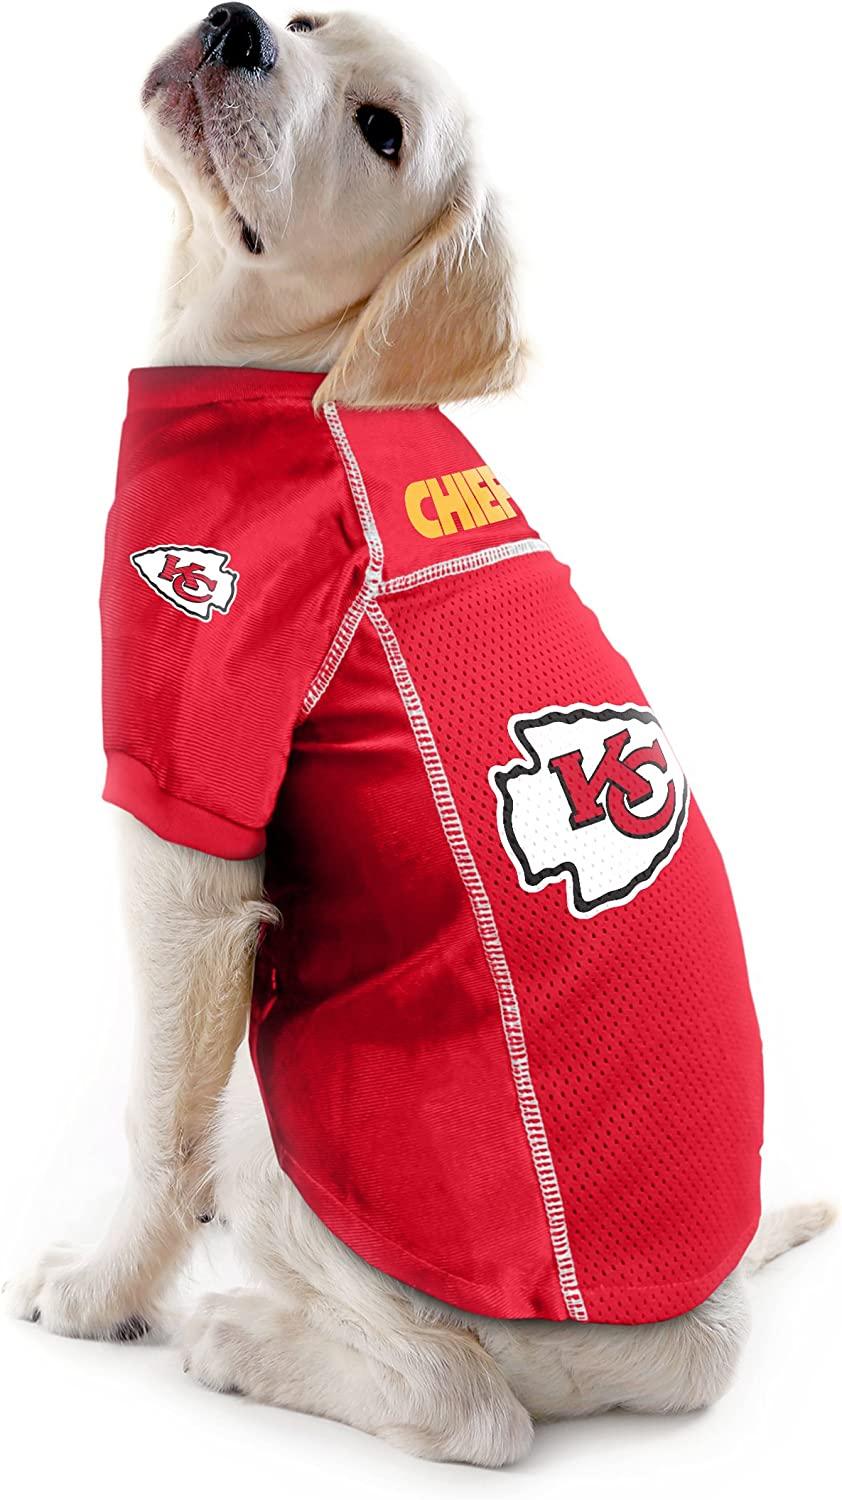  NFL Kansas City Chiefs Dog Jersey, Size: Large. Best